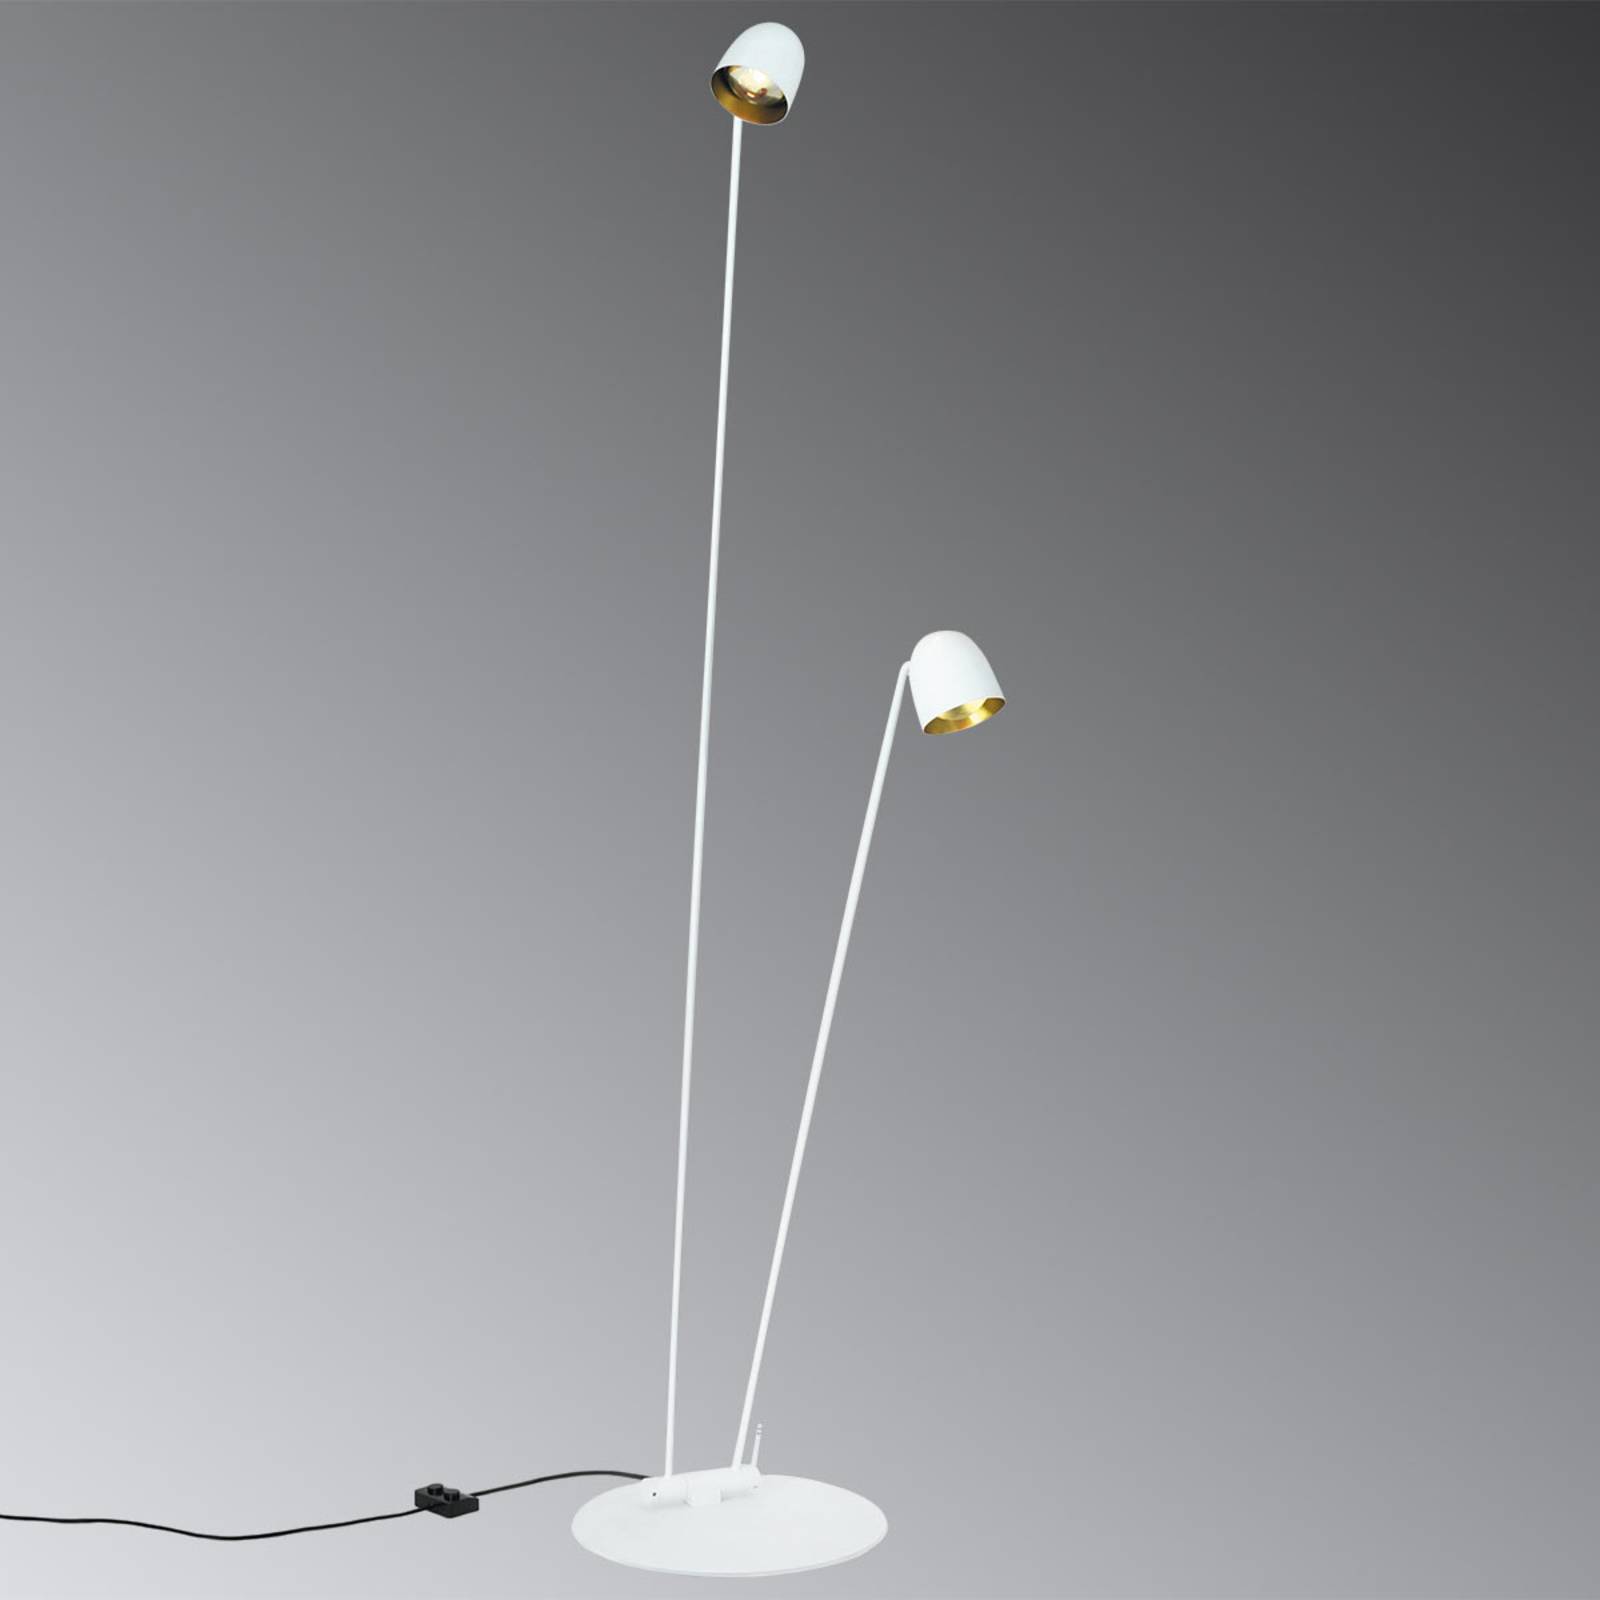 Flexibel ausrichtbare LED-Stehlampe Speers F weiß von B.lux